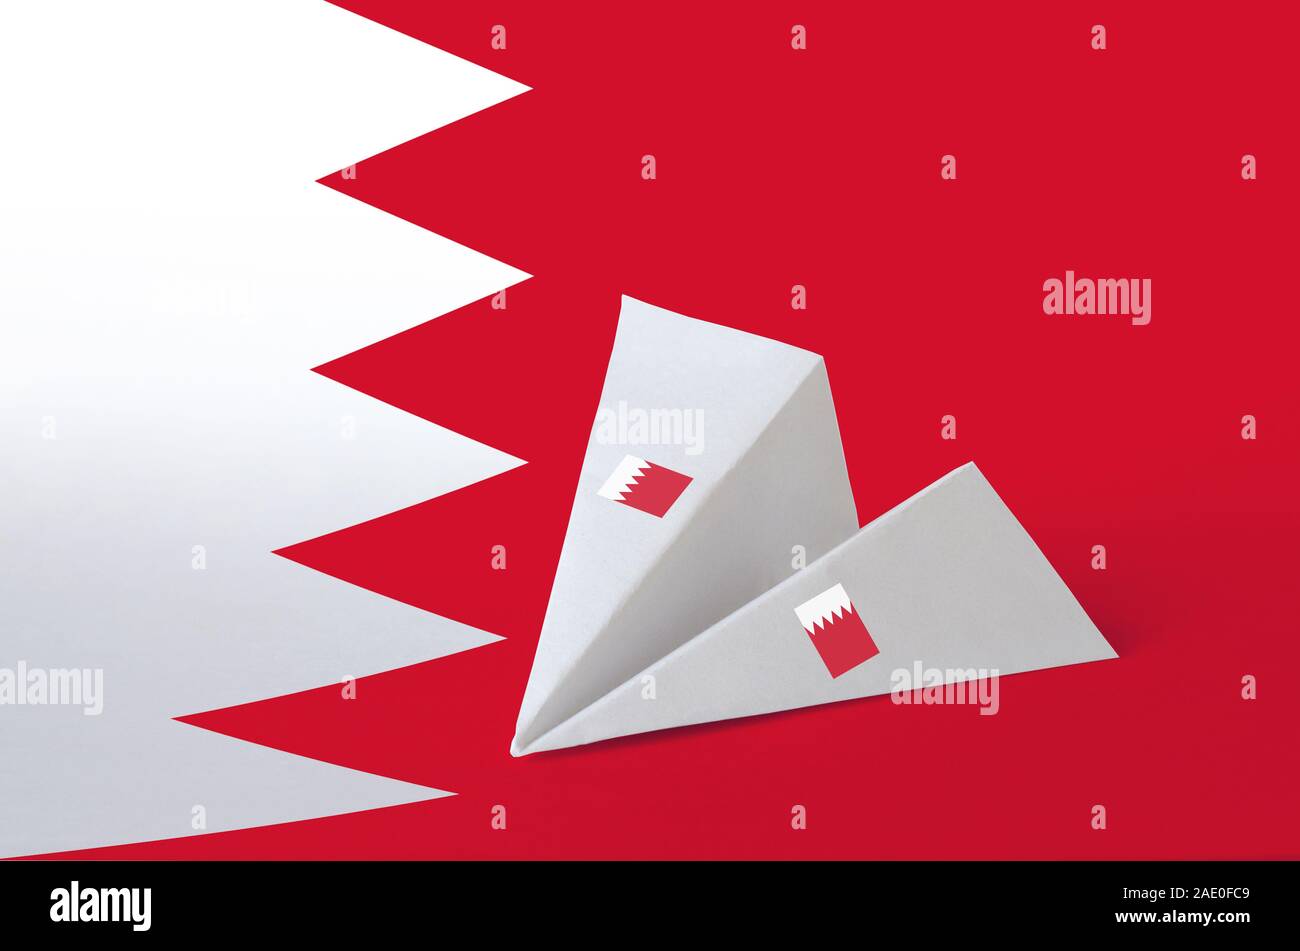 Drapeau Bahreïn représentées sur les avions en origami papier. Concept arts artisanaux orientaux Banque D'Images